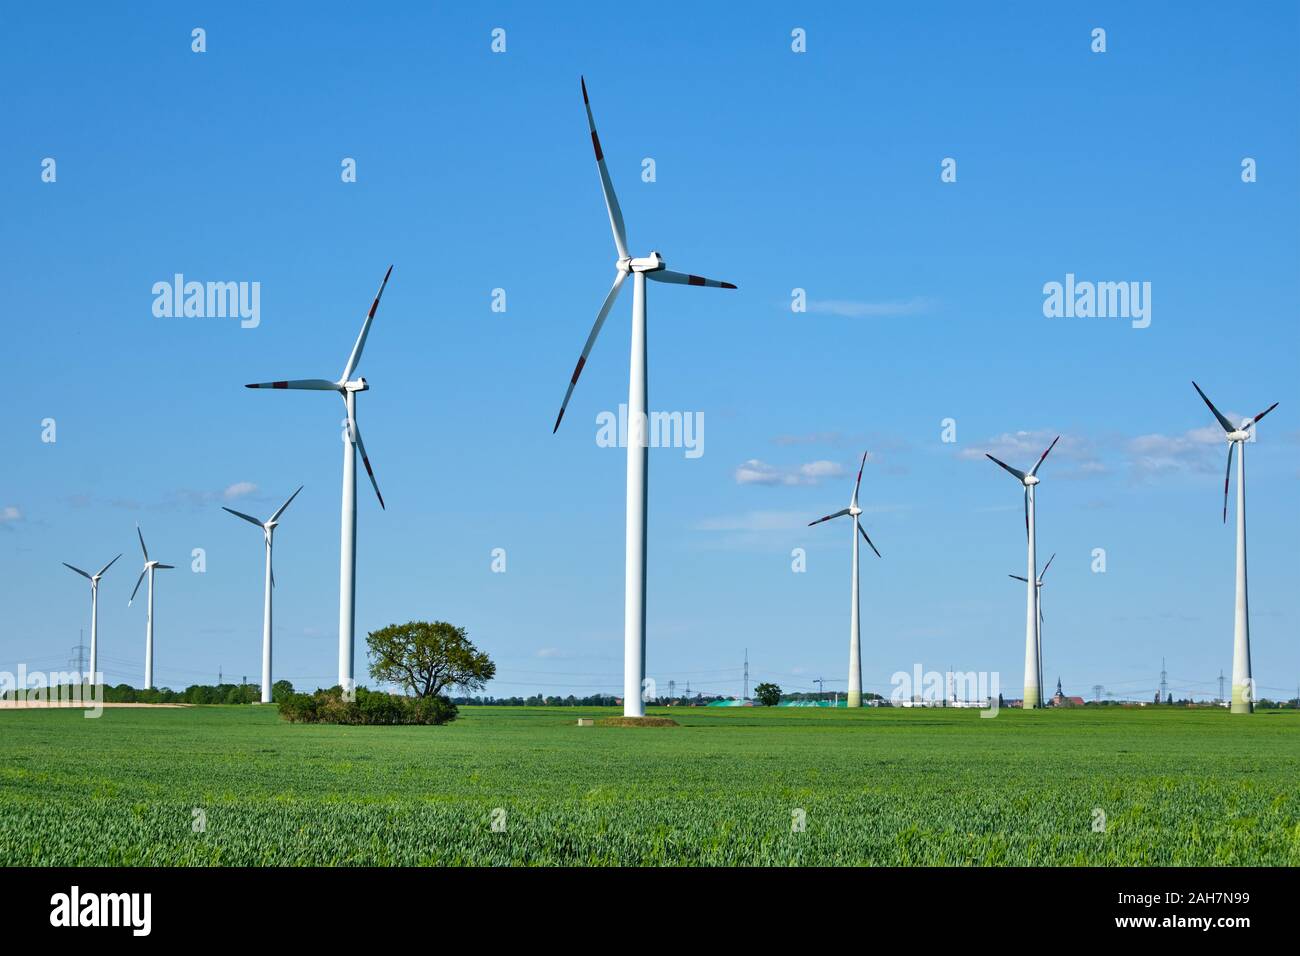 Moderne turbine eoliche in un campo di mais visto in Germania Foto Stock